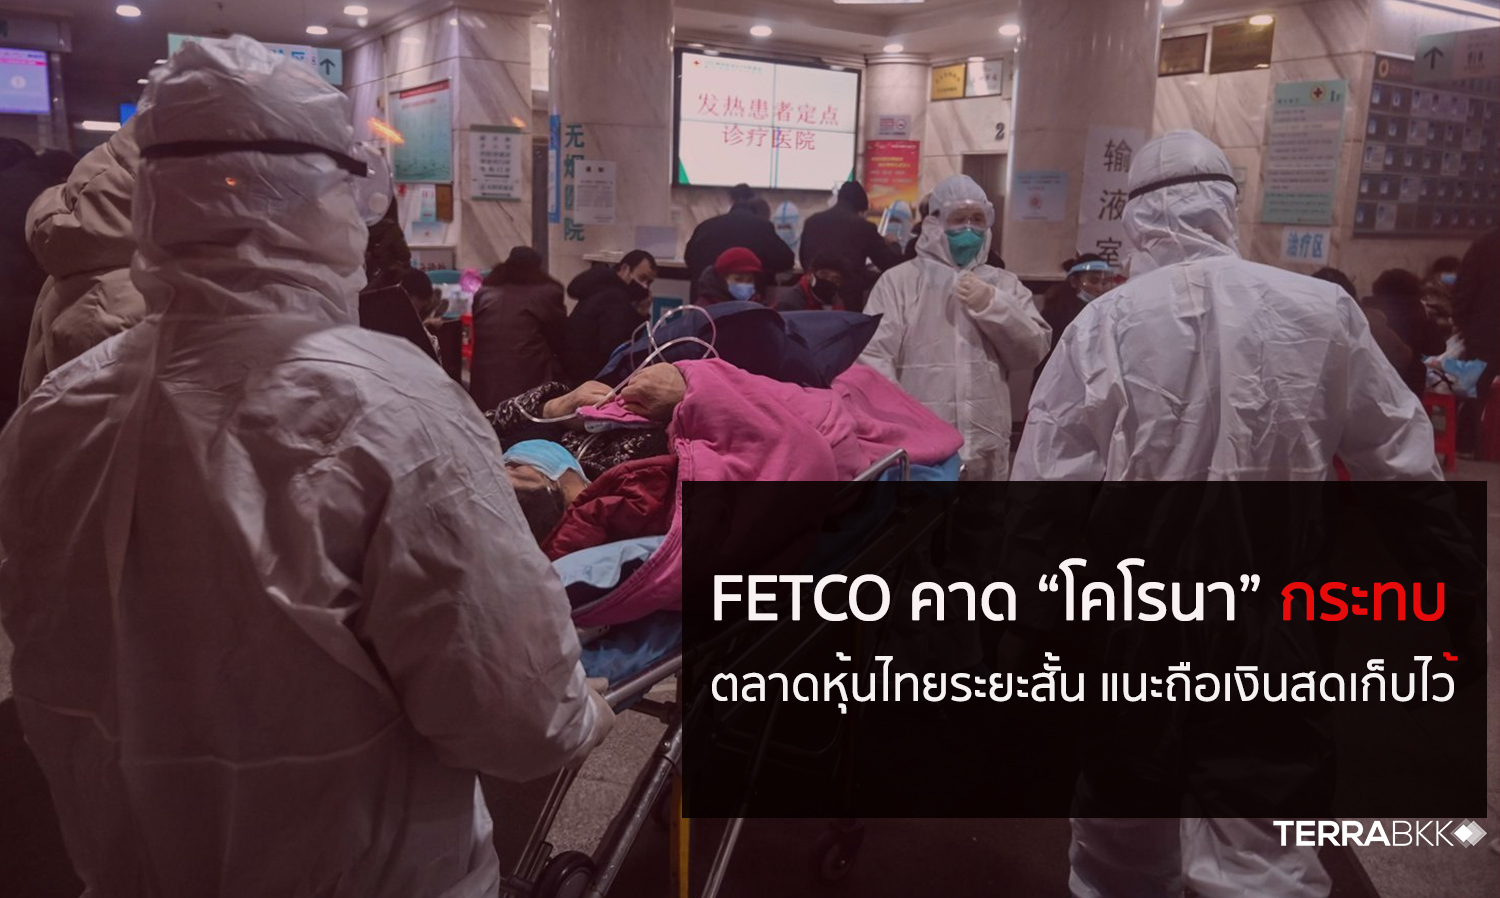 FETCO คาด “ไวรัสโคโรนา” กระทบตลาดหุ้นไทยระยะสั้น แนะถือเงินสดเก็บไว้